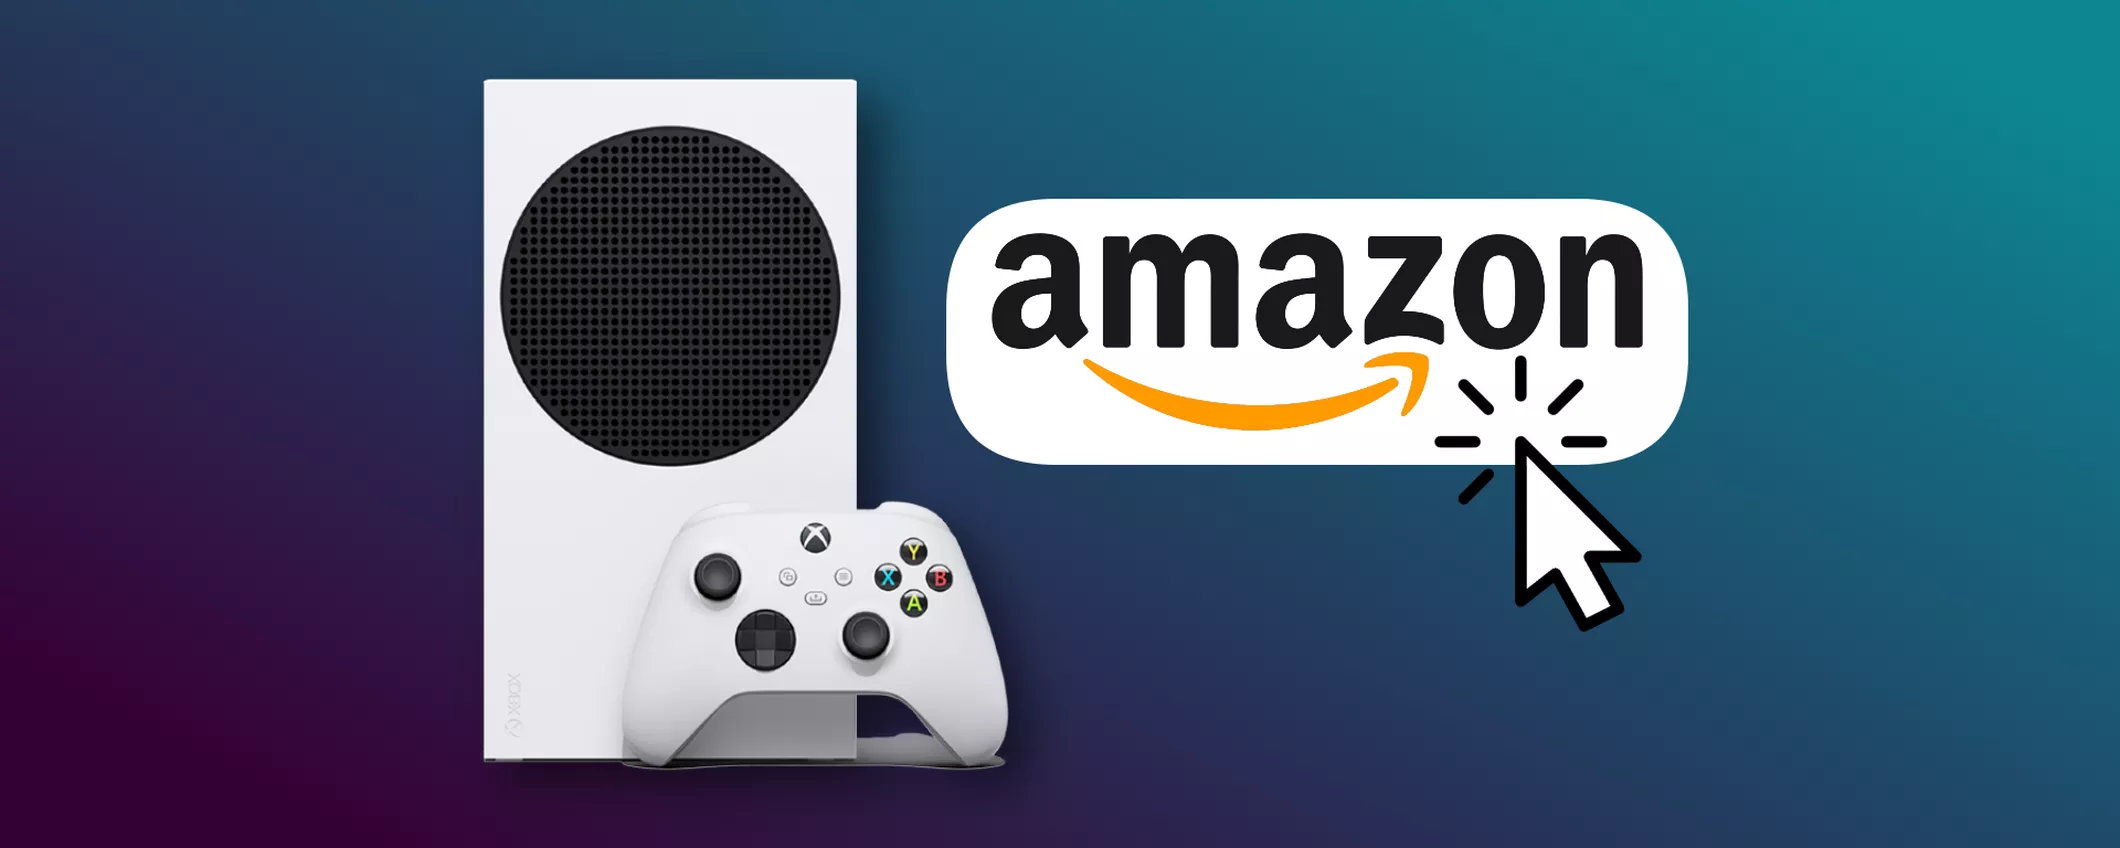 Xbox Series S ti aspetta a poco più di 250€: l'OFFERTA è su Amazon!